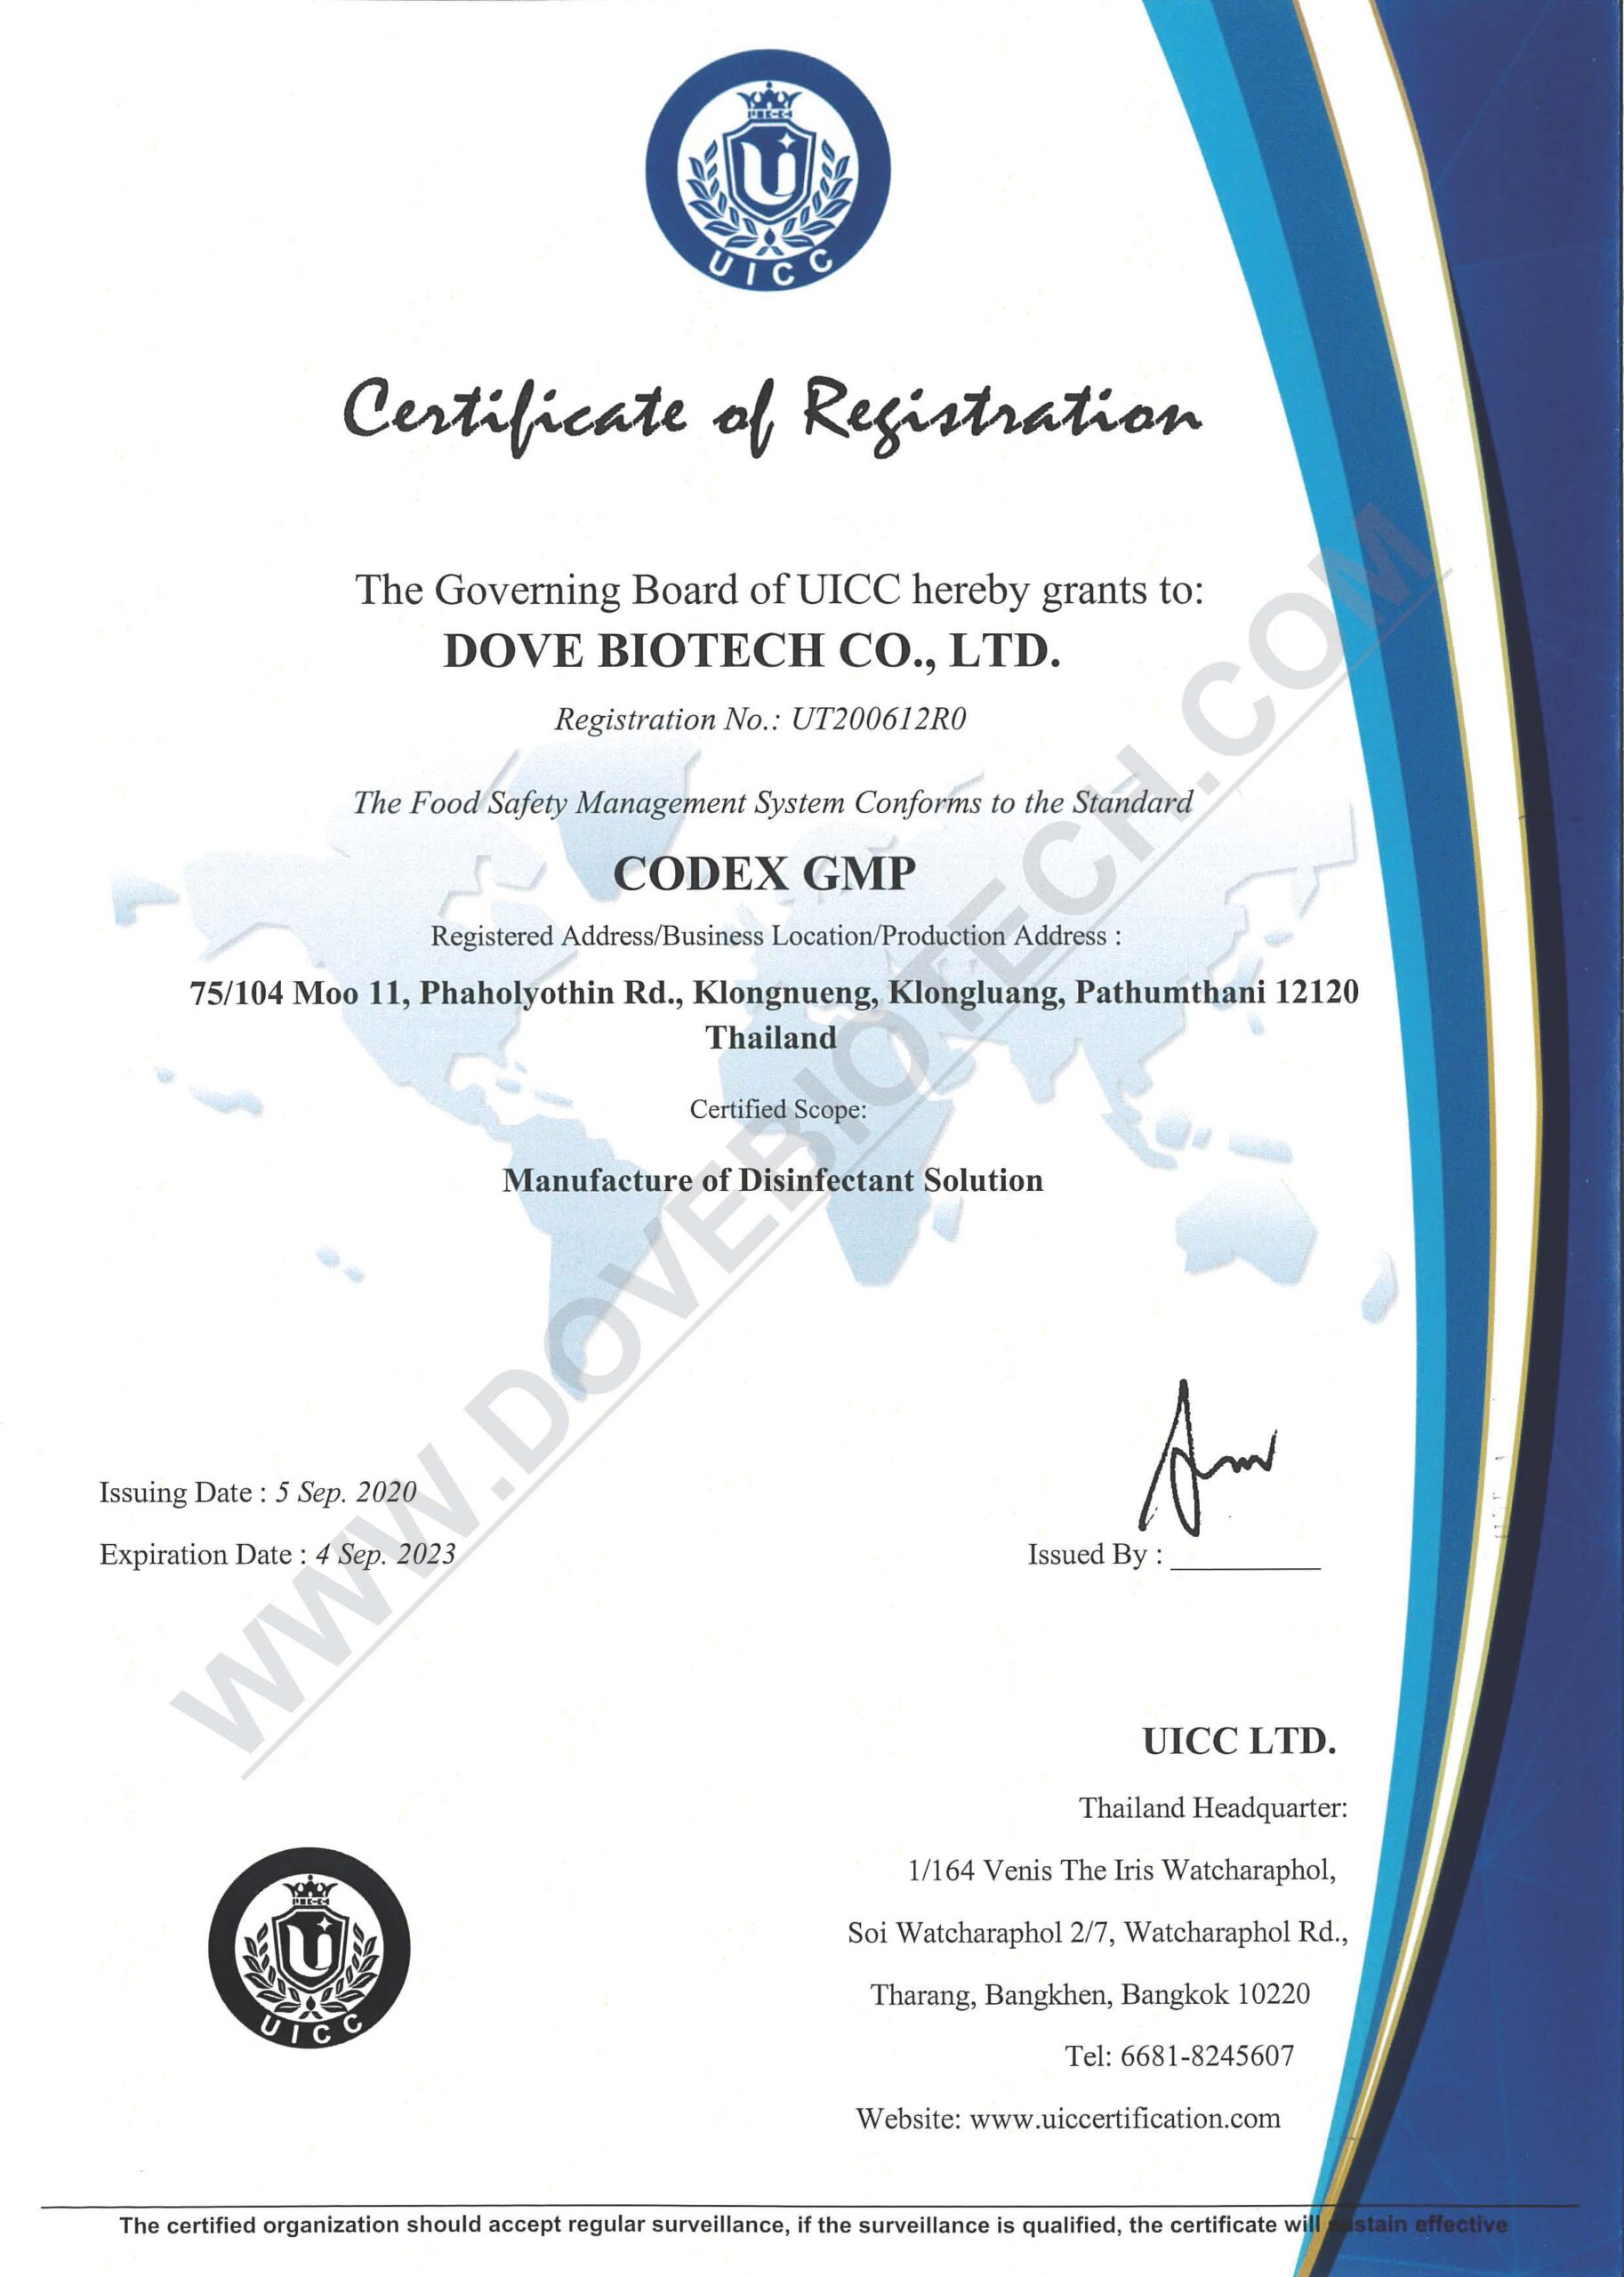 DOVE BIOTECH GMP Certificate